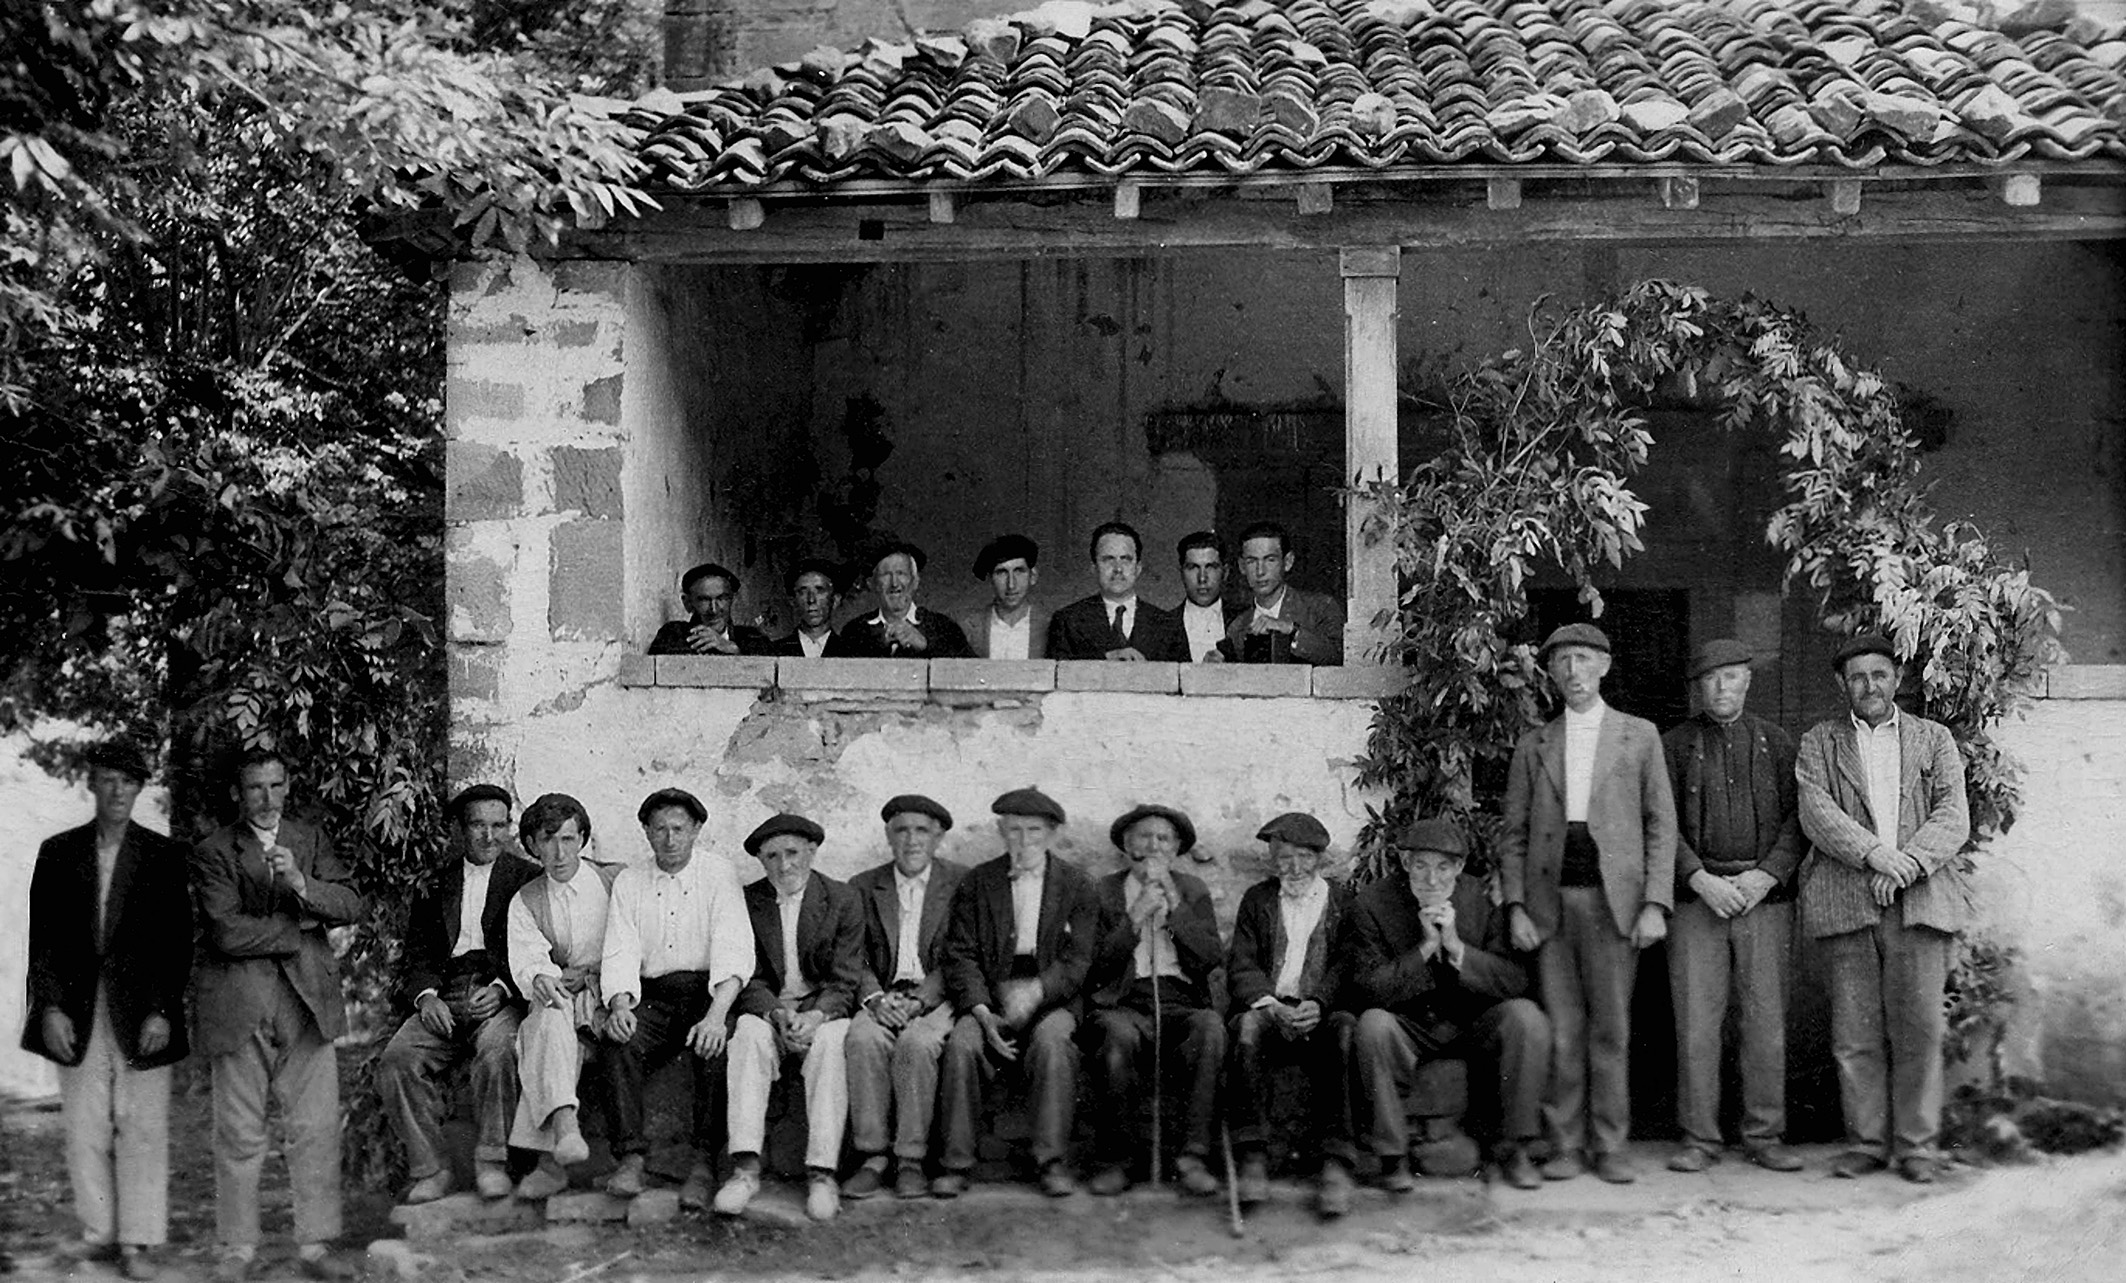 Neighbours of Lanzas Agudas, 1934